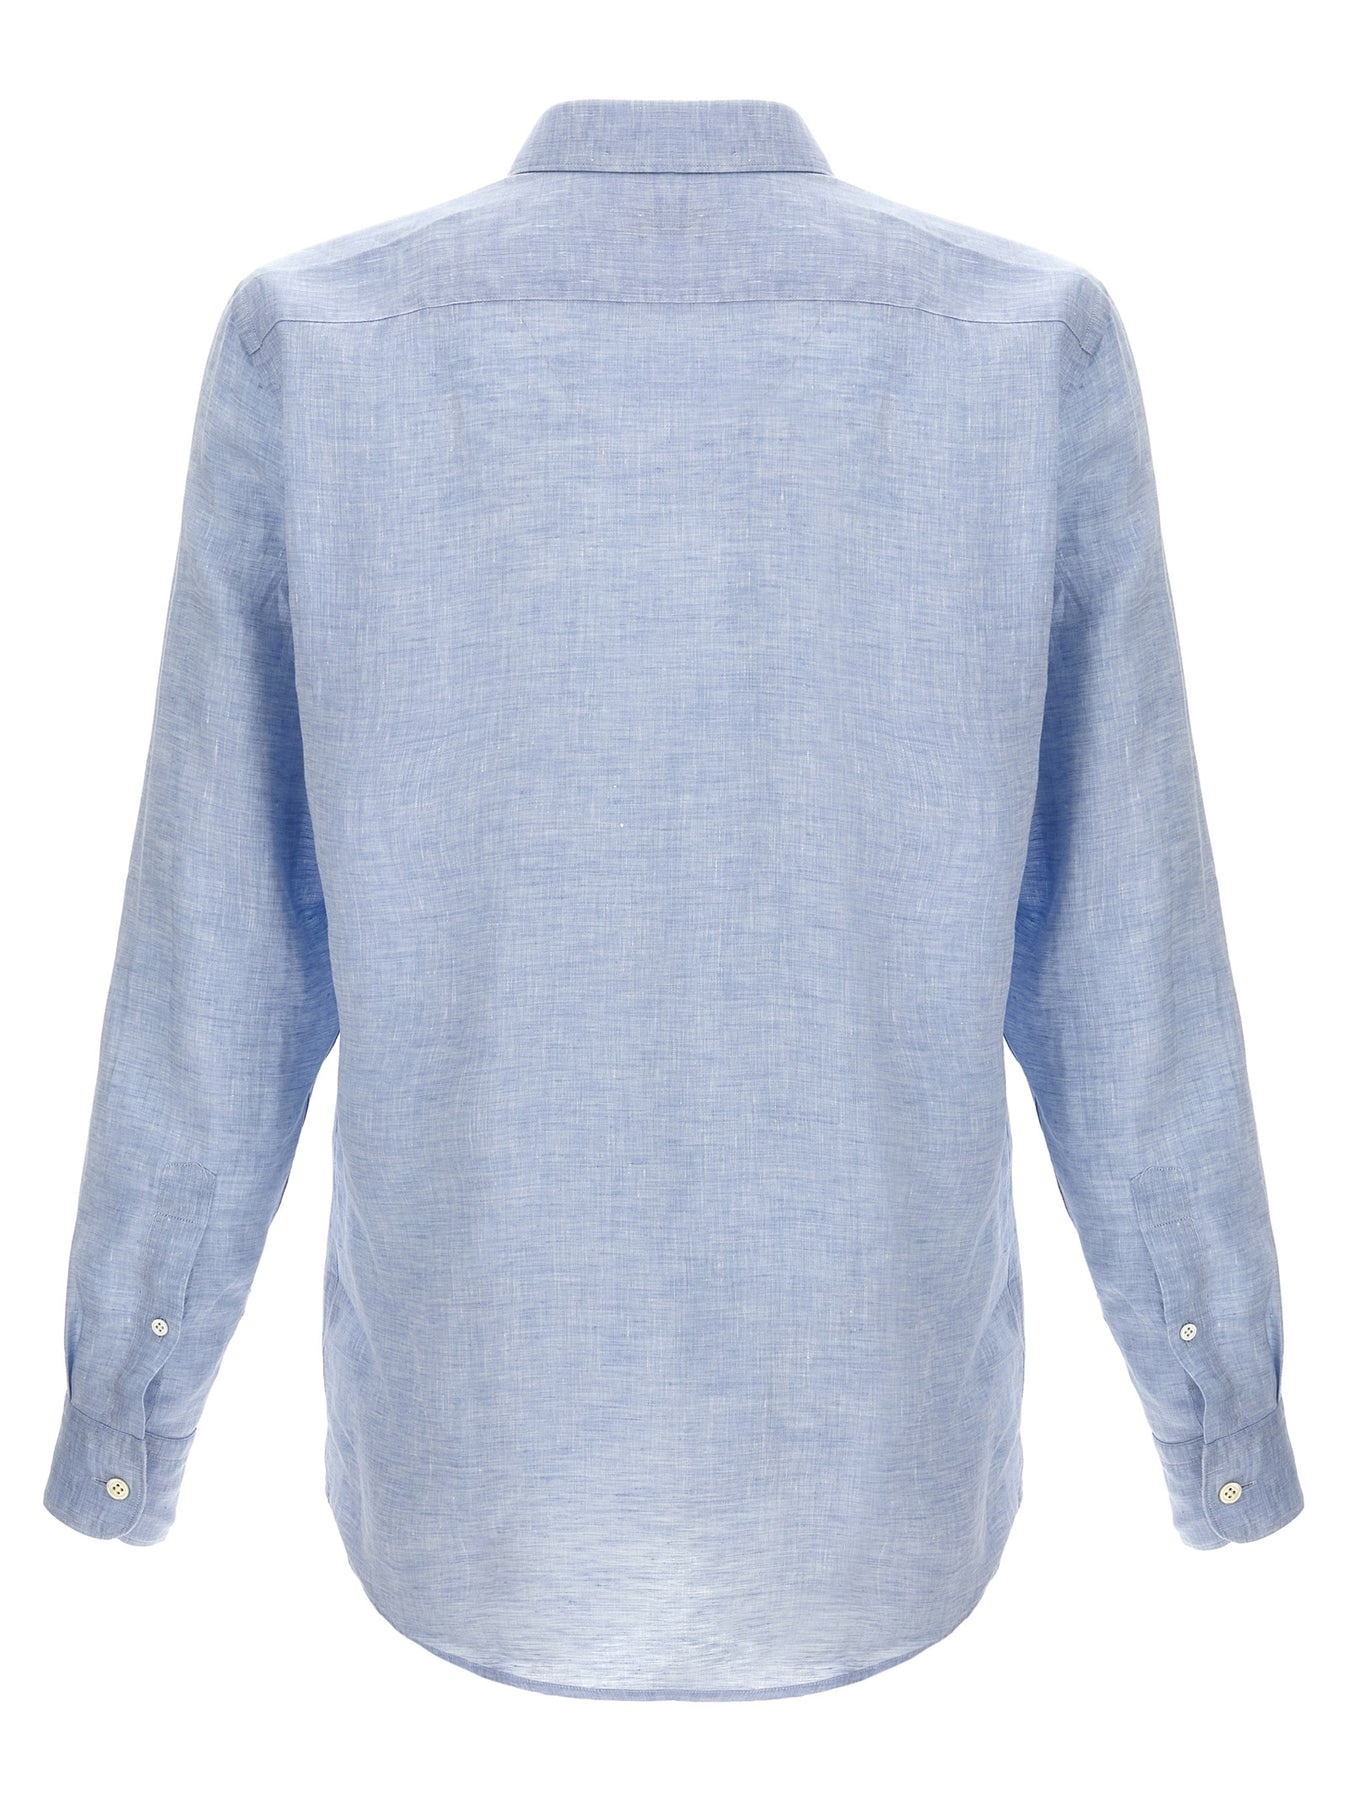 Linen Shirt Shirt, Blouse Light Blue - 2